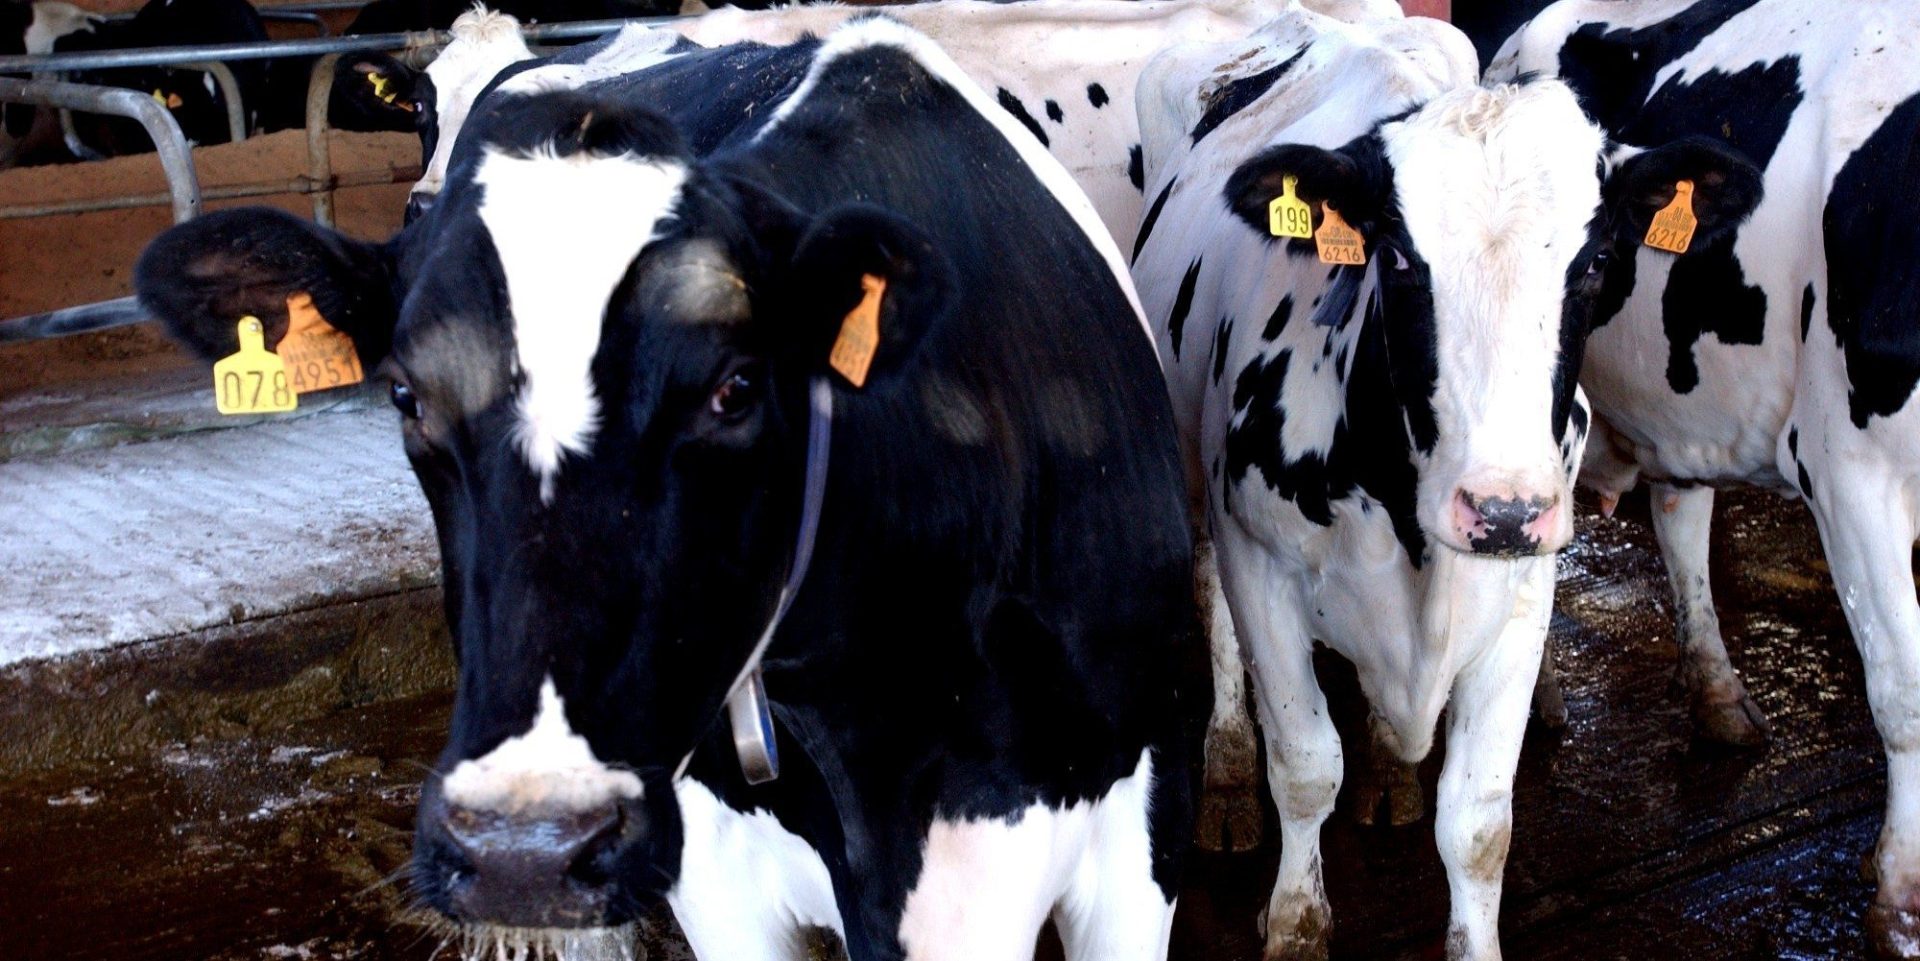 Imagen de archivo de vacas lecheras. FOTO: Magrama